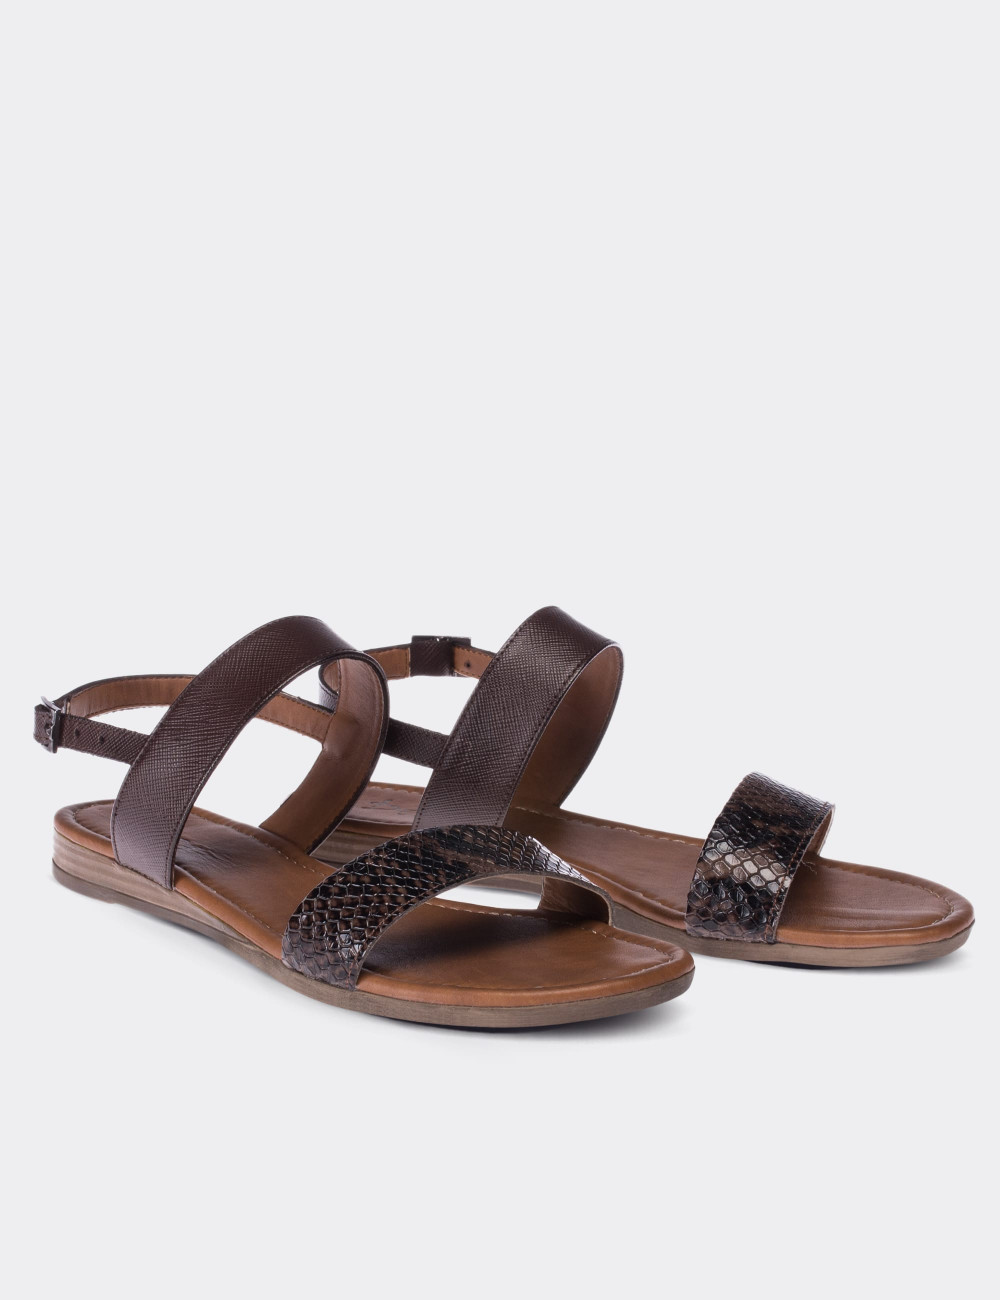 Hakiki Deri Kroko Kahverengi Kadın Sandalet - 02120ZKHVC01